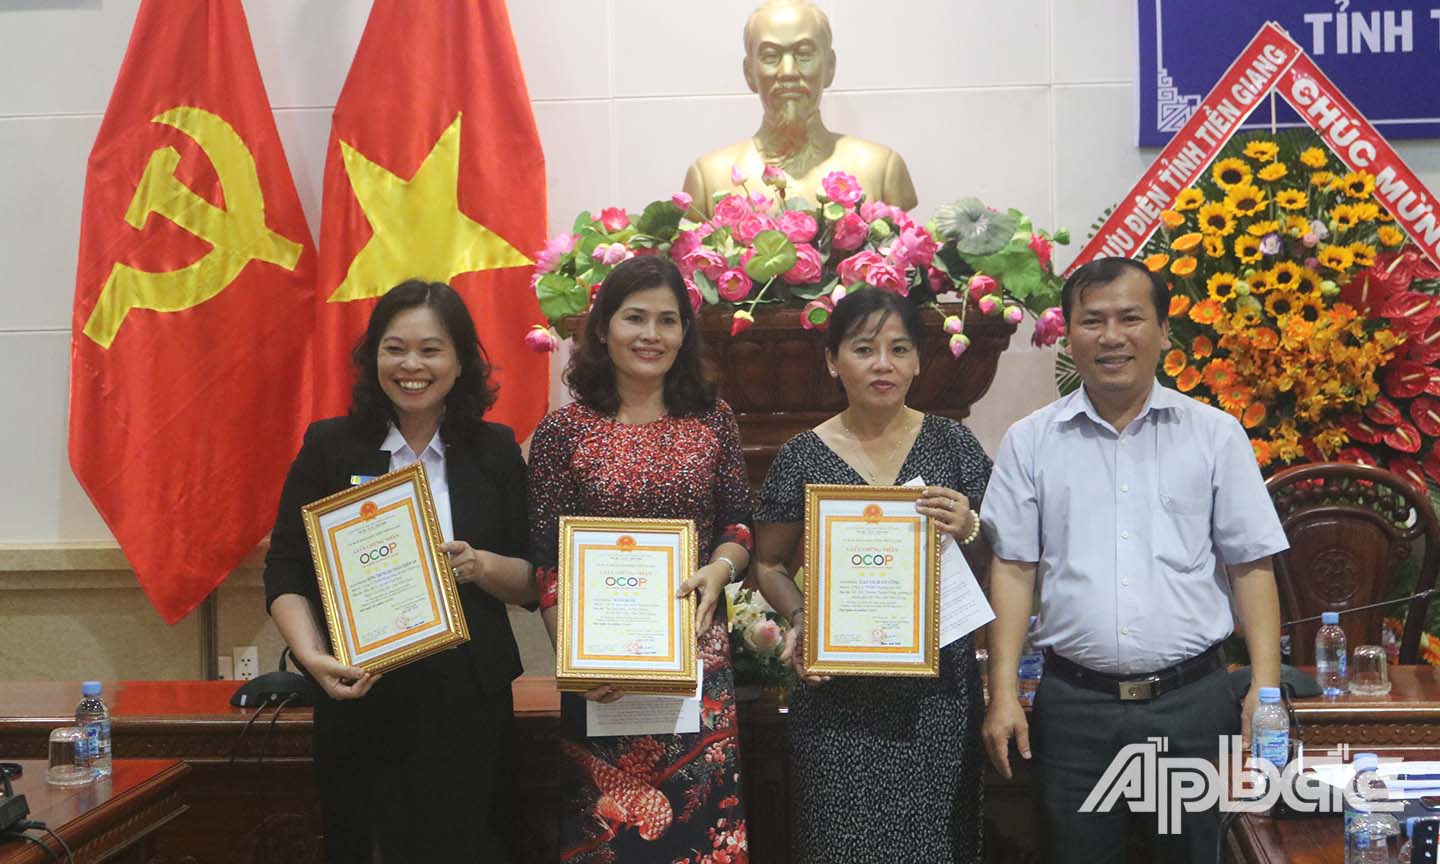 Phó Giám đốc Sở NN&PTNT Trần Hoàng Nhật Nam trao giấy chứng nhận cho các cơ sở sản xuất.